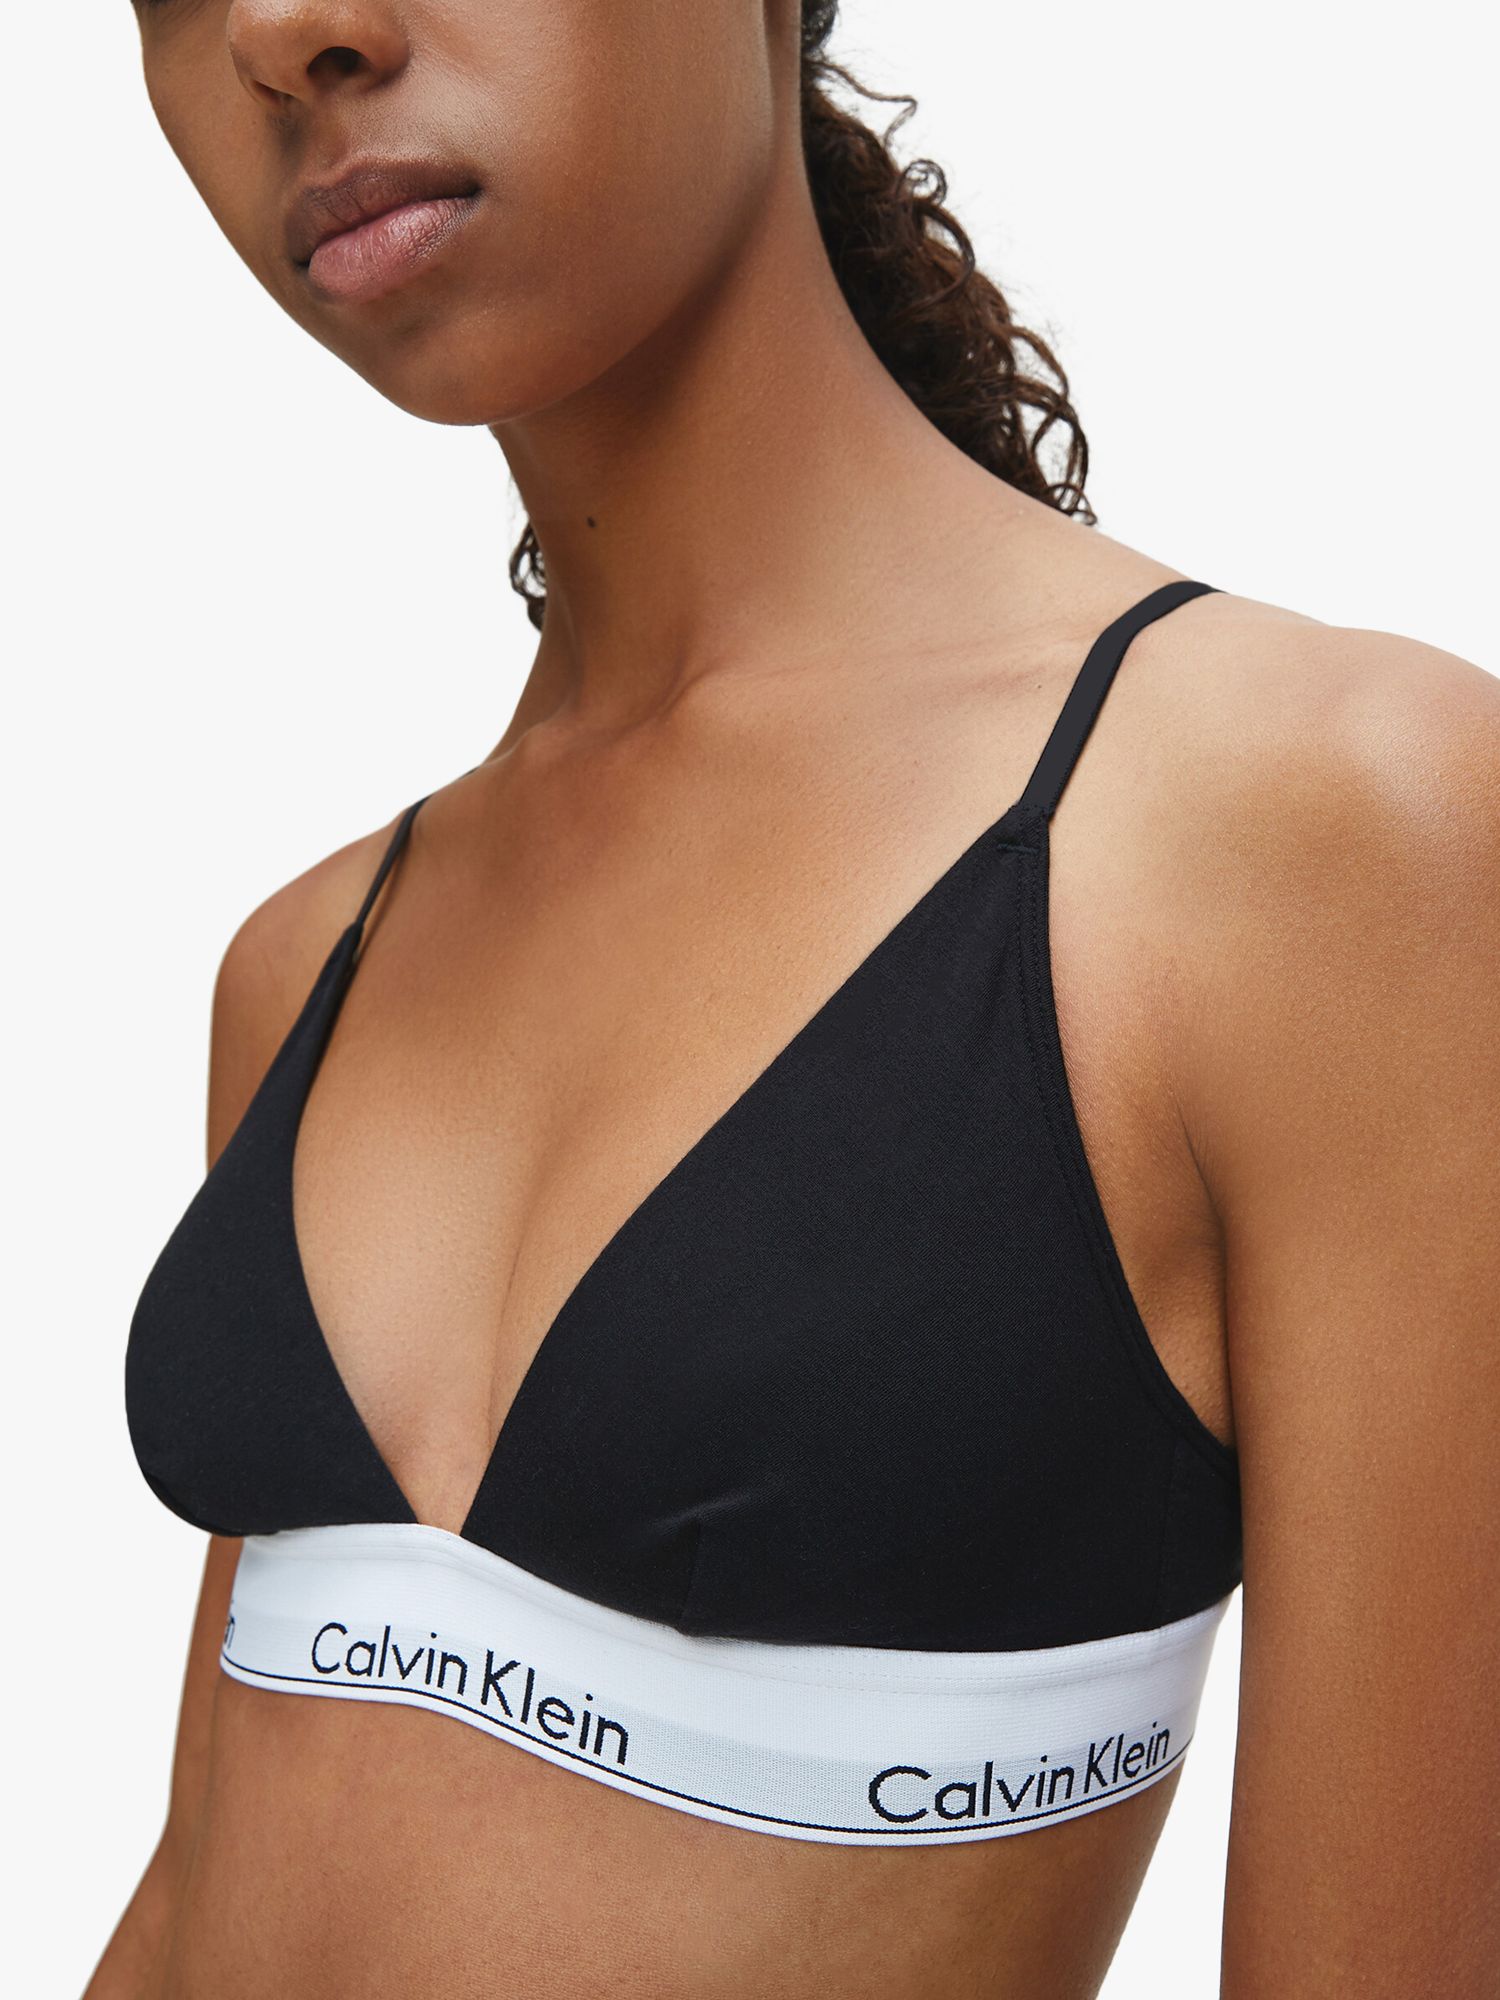 Calvin Klein View All Women's Lingerie & Underwear